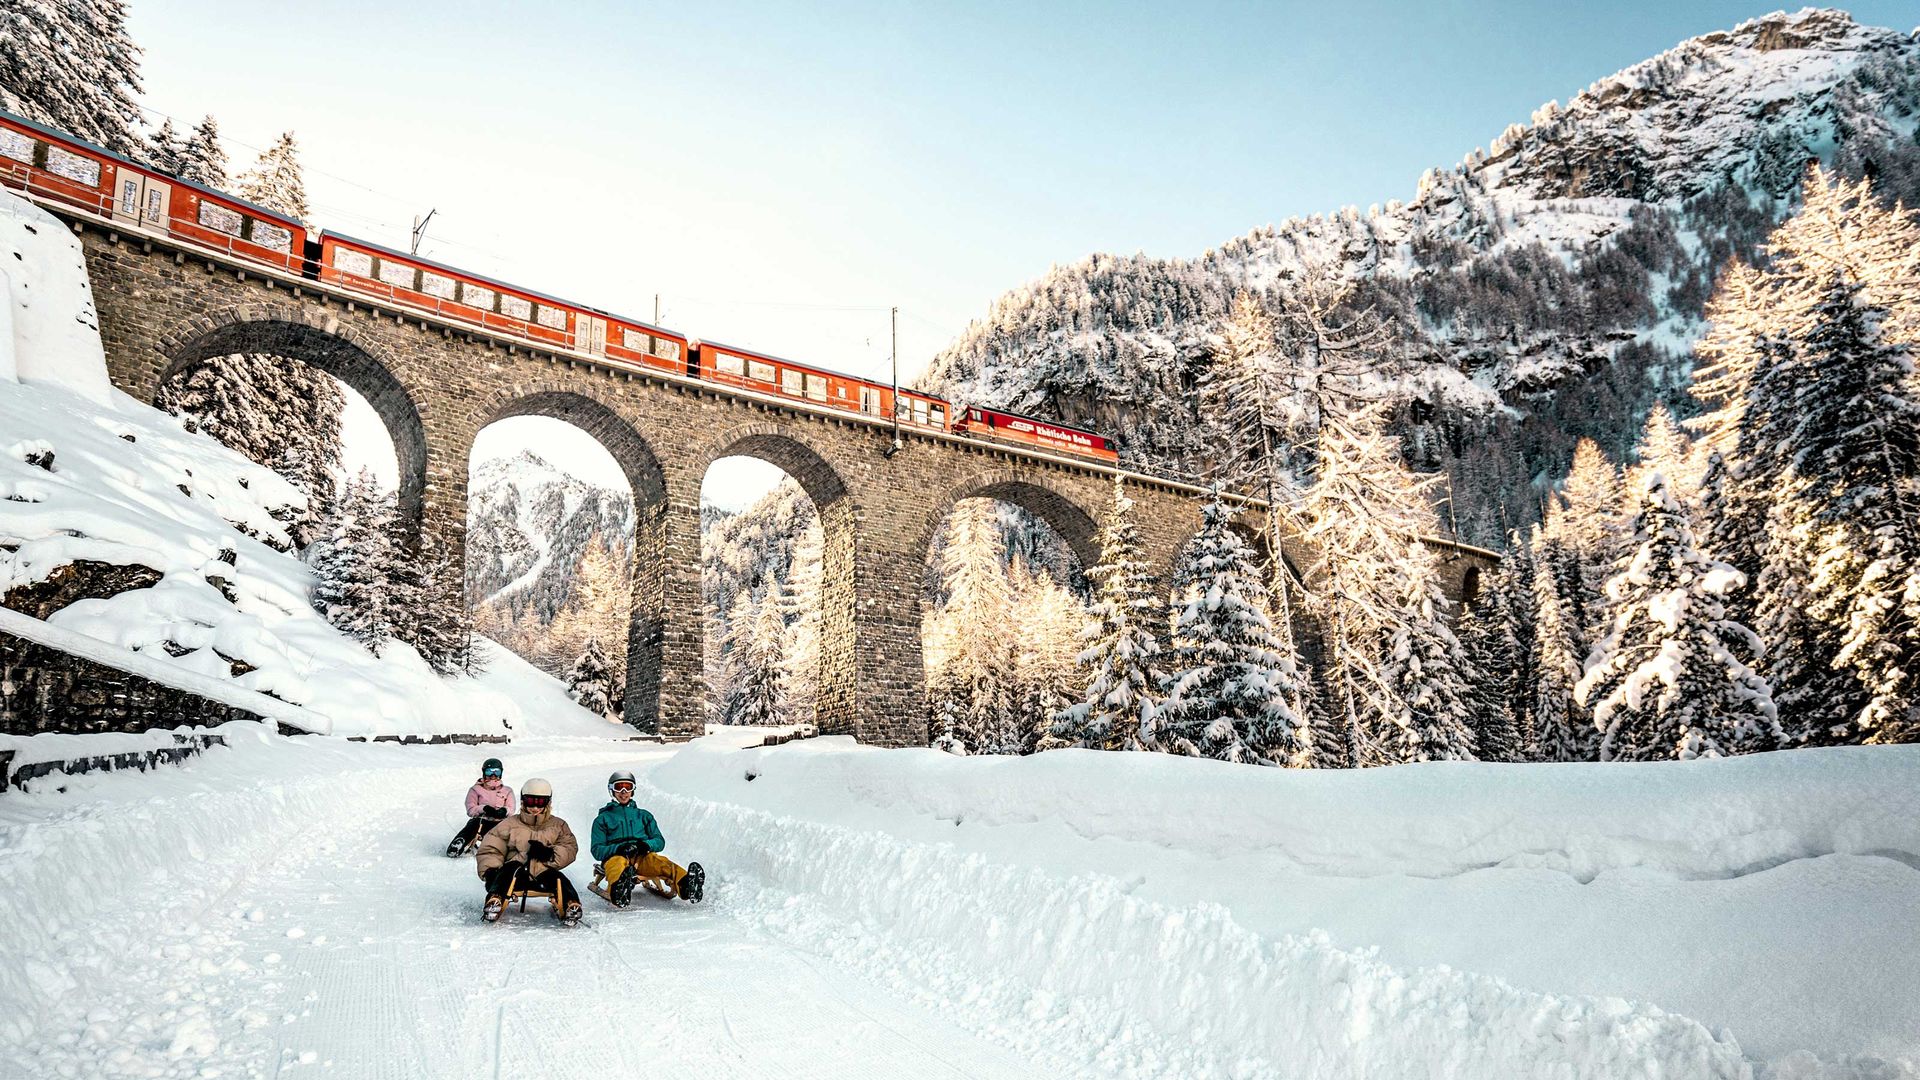 3 Personen fahren auf Schlitten die Piste hinunter. Im Hintergrund ist eine grosse Eisenbahnbrücke mit einem Zug darauf zu sehen. Es ist ein herrlicher Wintersporttag.